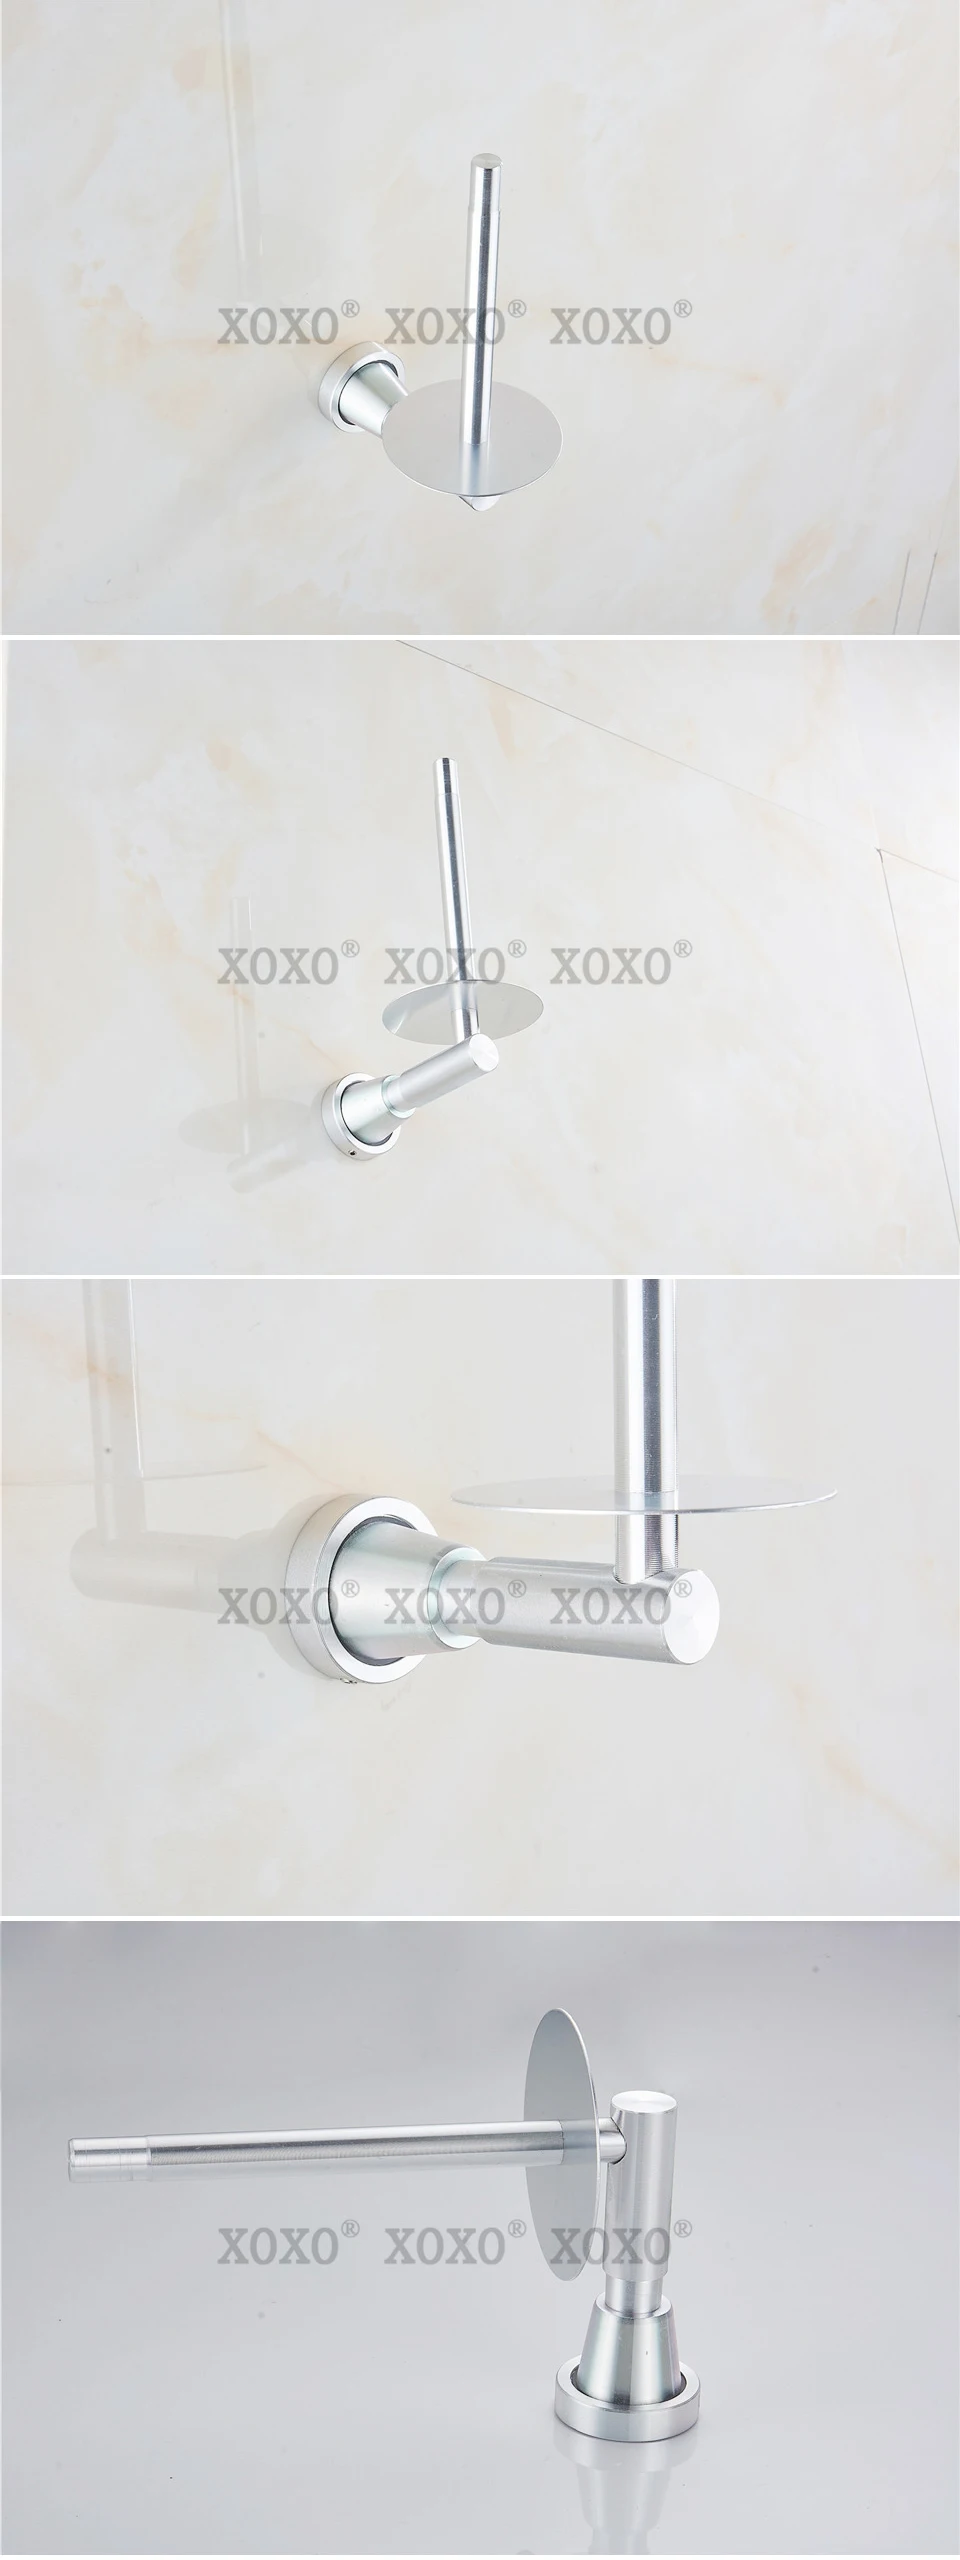 XOXONew Finether продукт soild практические настенный алюминиевые аксессуары для ванной комнаты для ванной держатель для бумаги/держатель рулона 3089